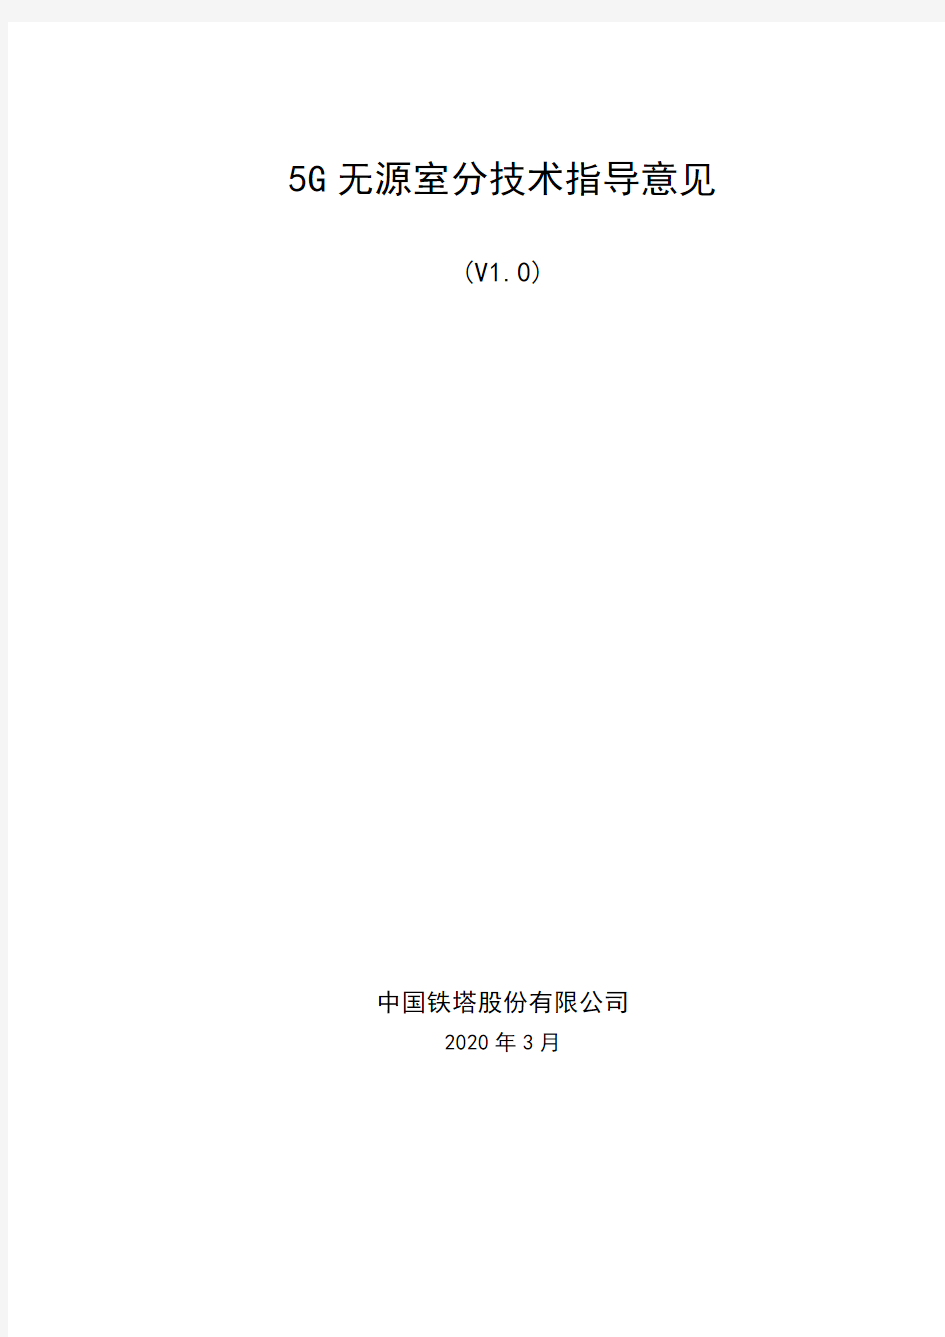 中国铁塔 5G无源室分技术指导意见(V1.0)